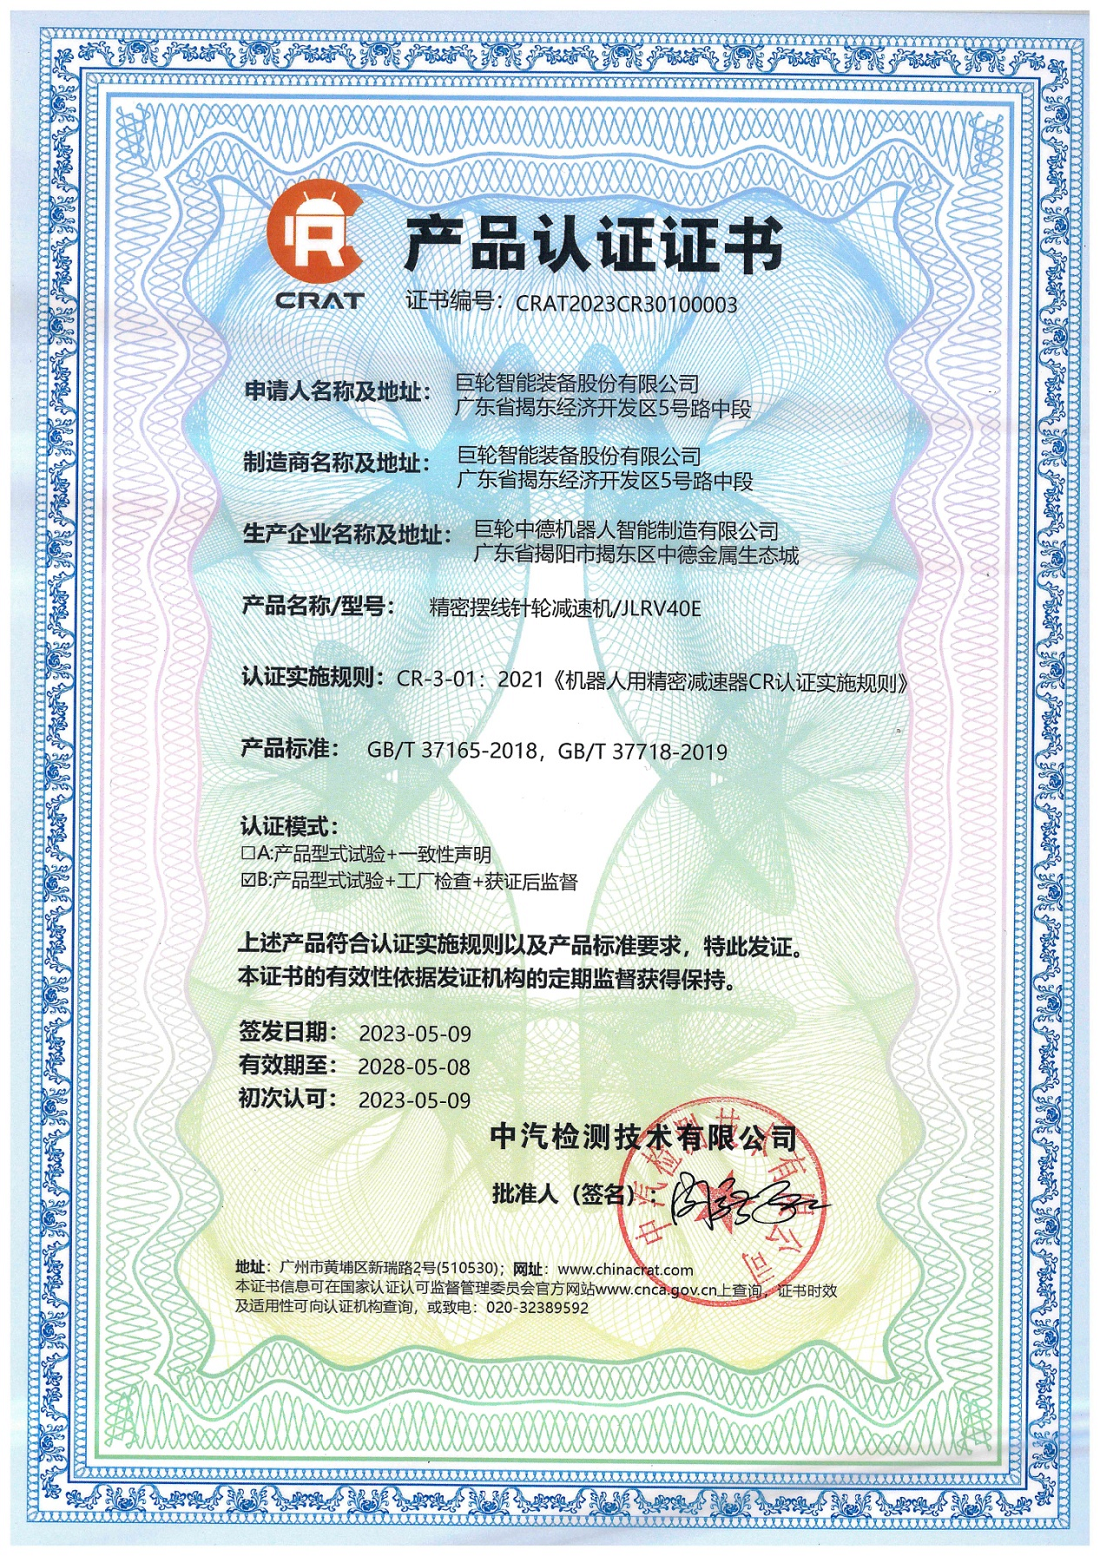 十年磨一剑，砥砺成大器 —— 990888藏宝阁香港RV减速器首家国产通过CR产品认证